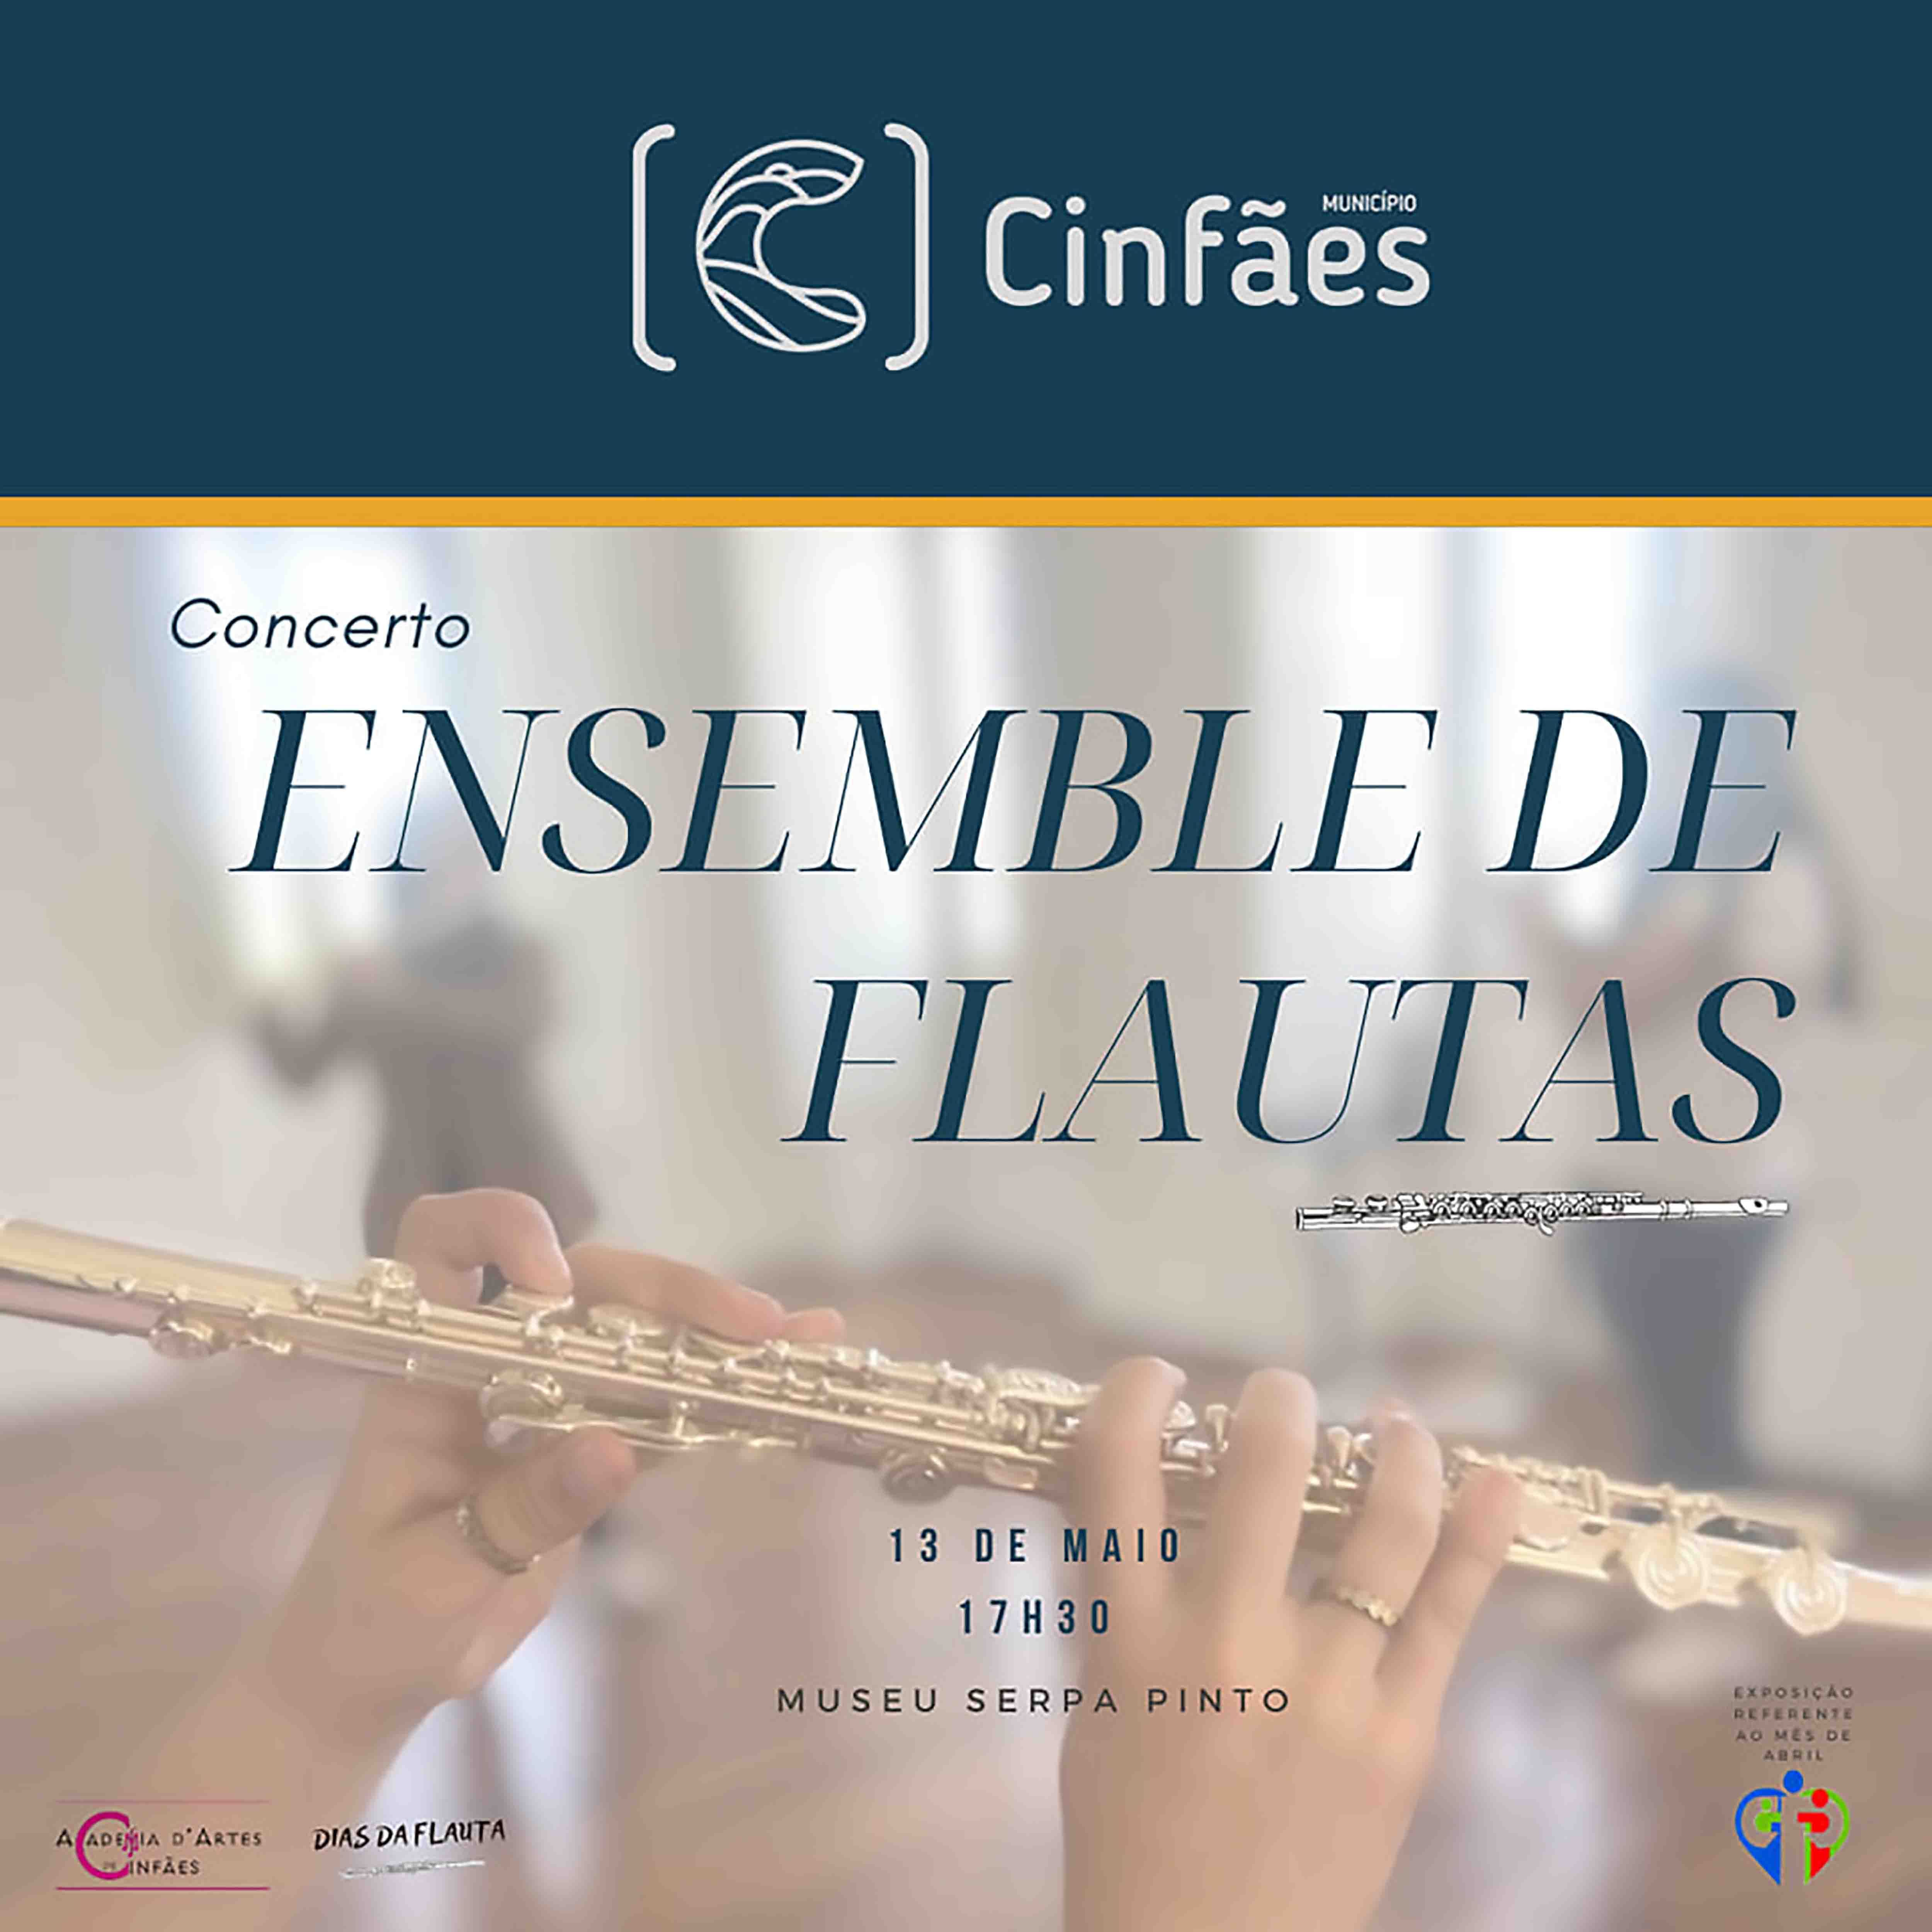 Concerto de Ensemble de Flautas no Museu Serpa Pinto